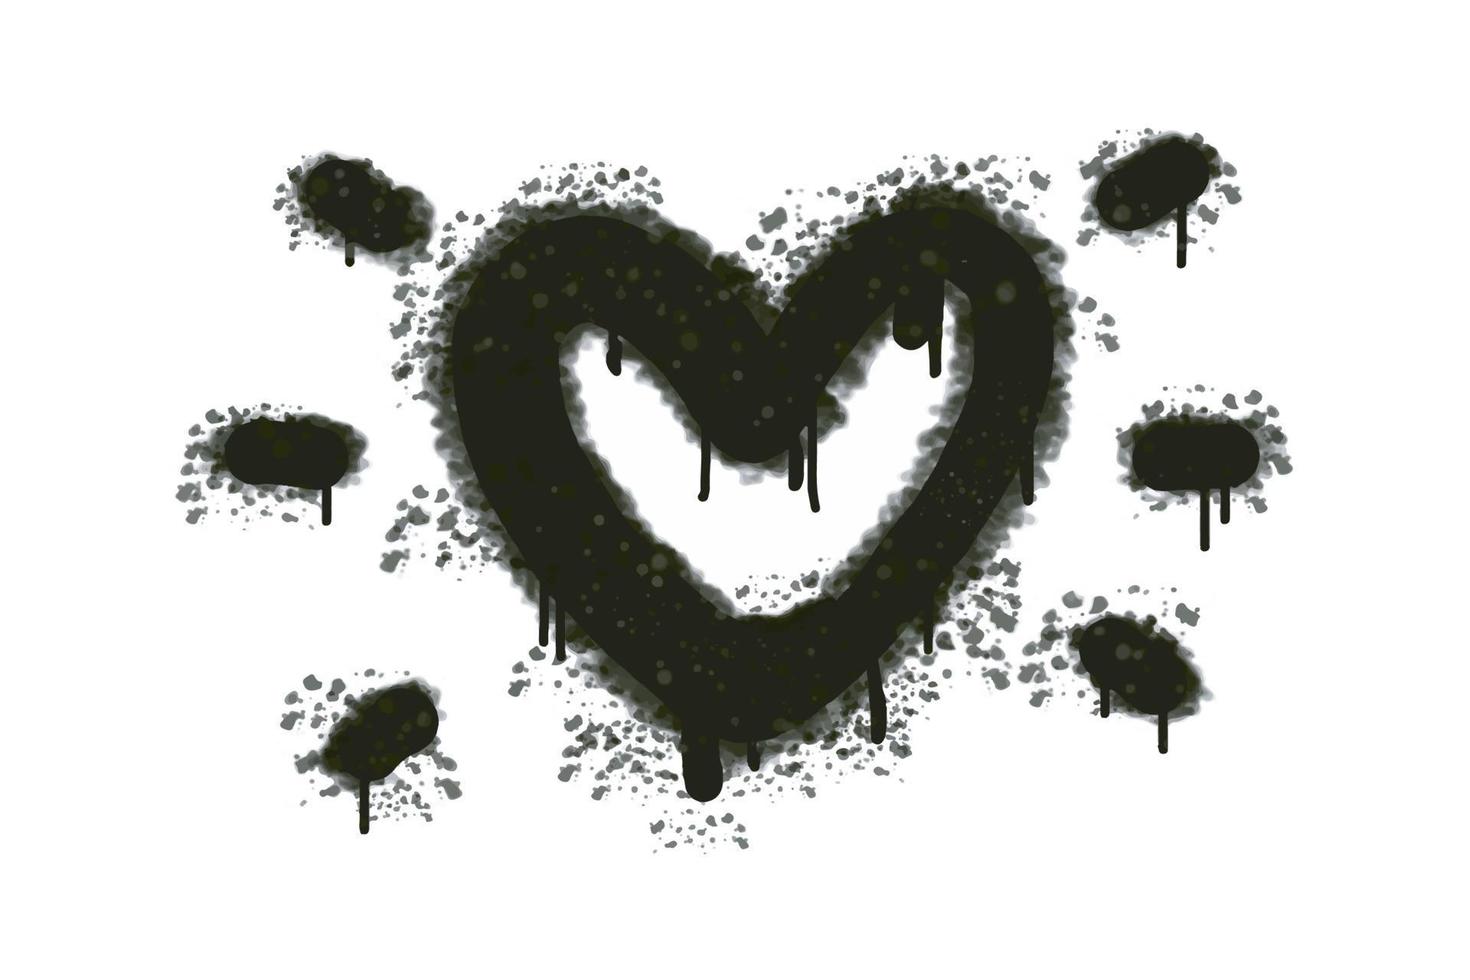 spray de sinal de coração grafite pintado em preto no branco. amo o símbolo de gota de coração. Isolado em um fundo branco. ilustração vetorial vetor